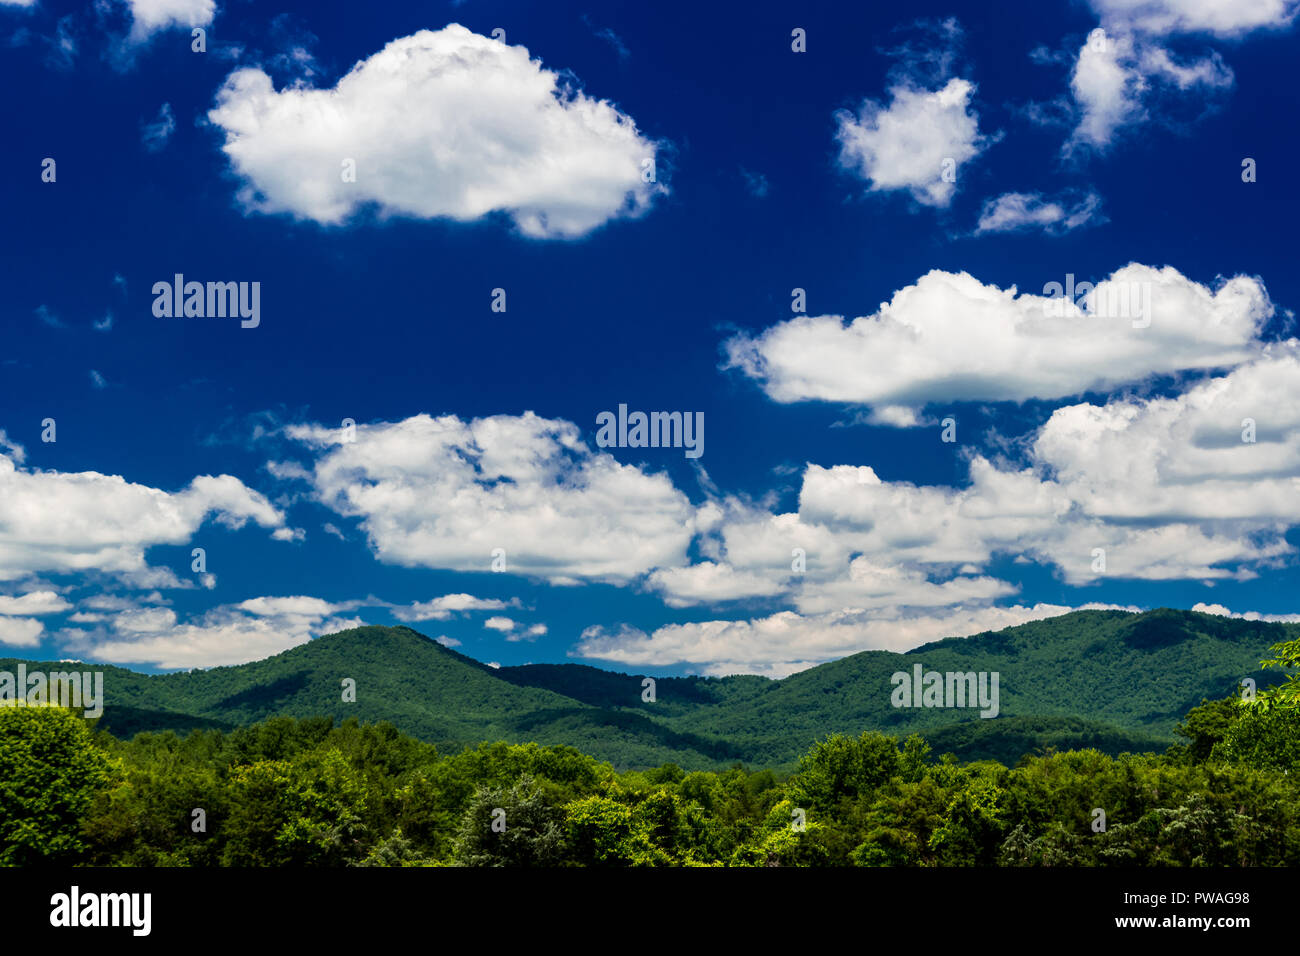 Paisaje de las montañas apalaches en un brillante día con nubes blancas y el cielo azul Foto de stock